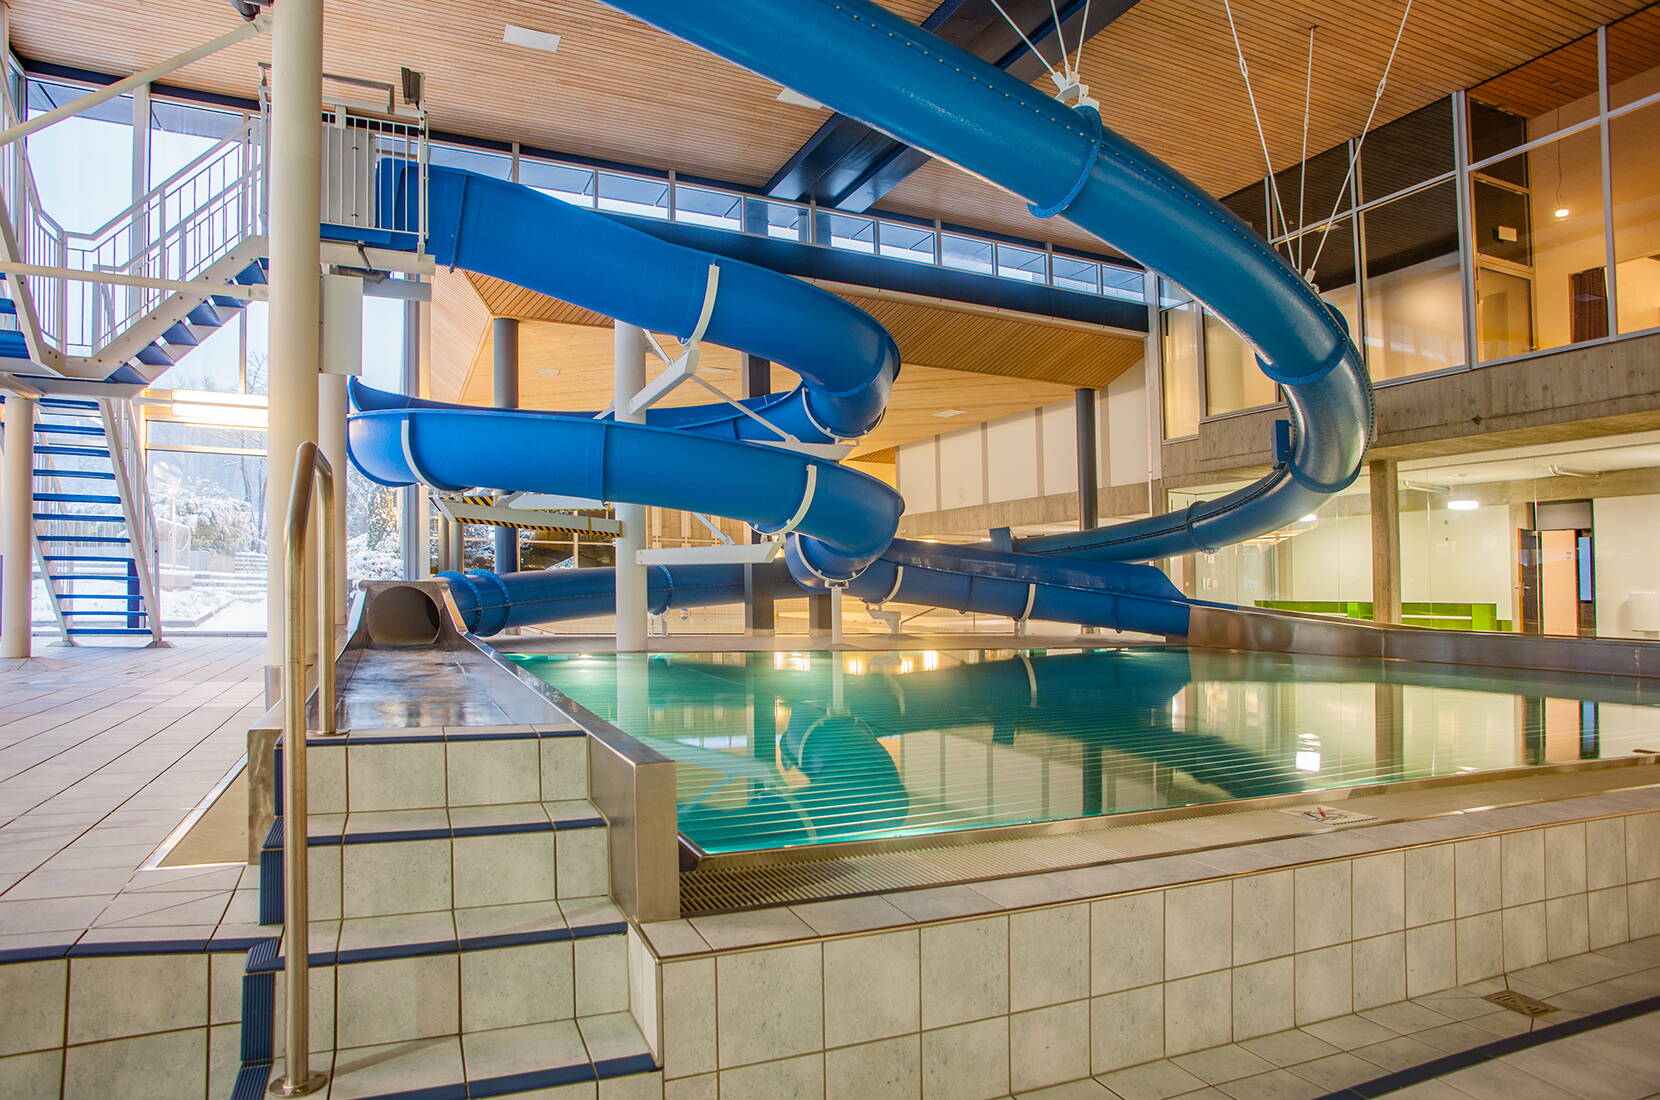 Das Hallenbad verfügt über ein Ganzjahres-Aussenbecken, Wasserrutschen, Lernschwimmbecken, Plantschbecken mit diversen Spieleinrichtungen sowie Schwimm- und Mehrzweckbecken.